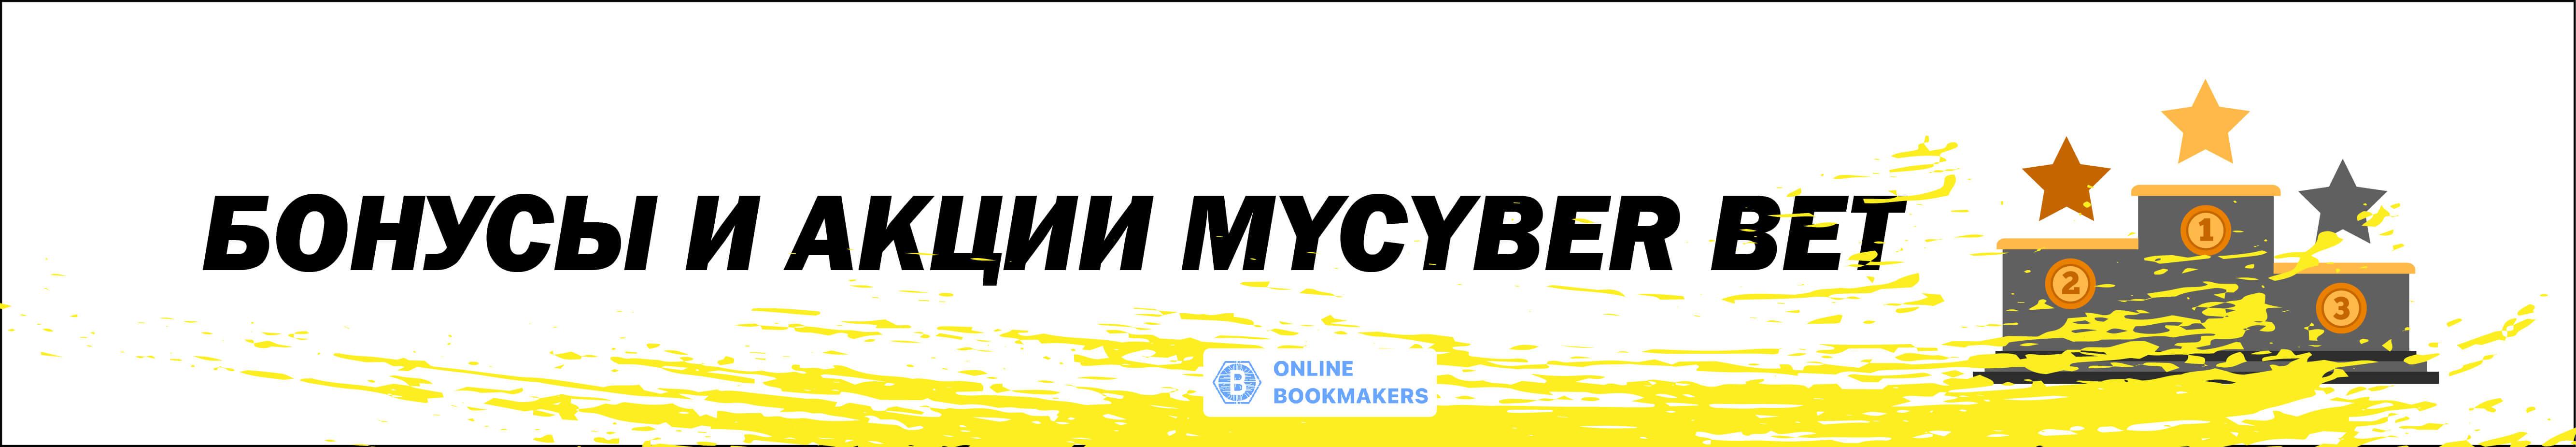 Бонусы и акции MyCyber bet